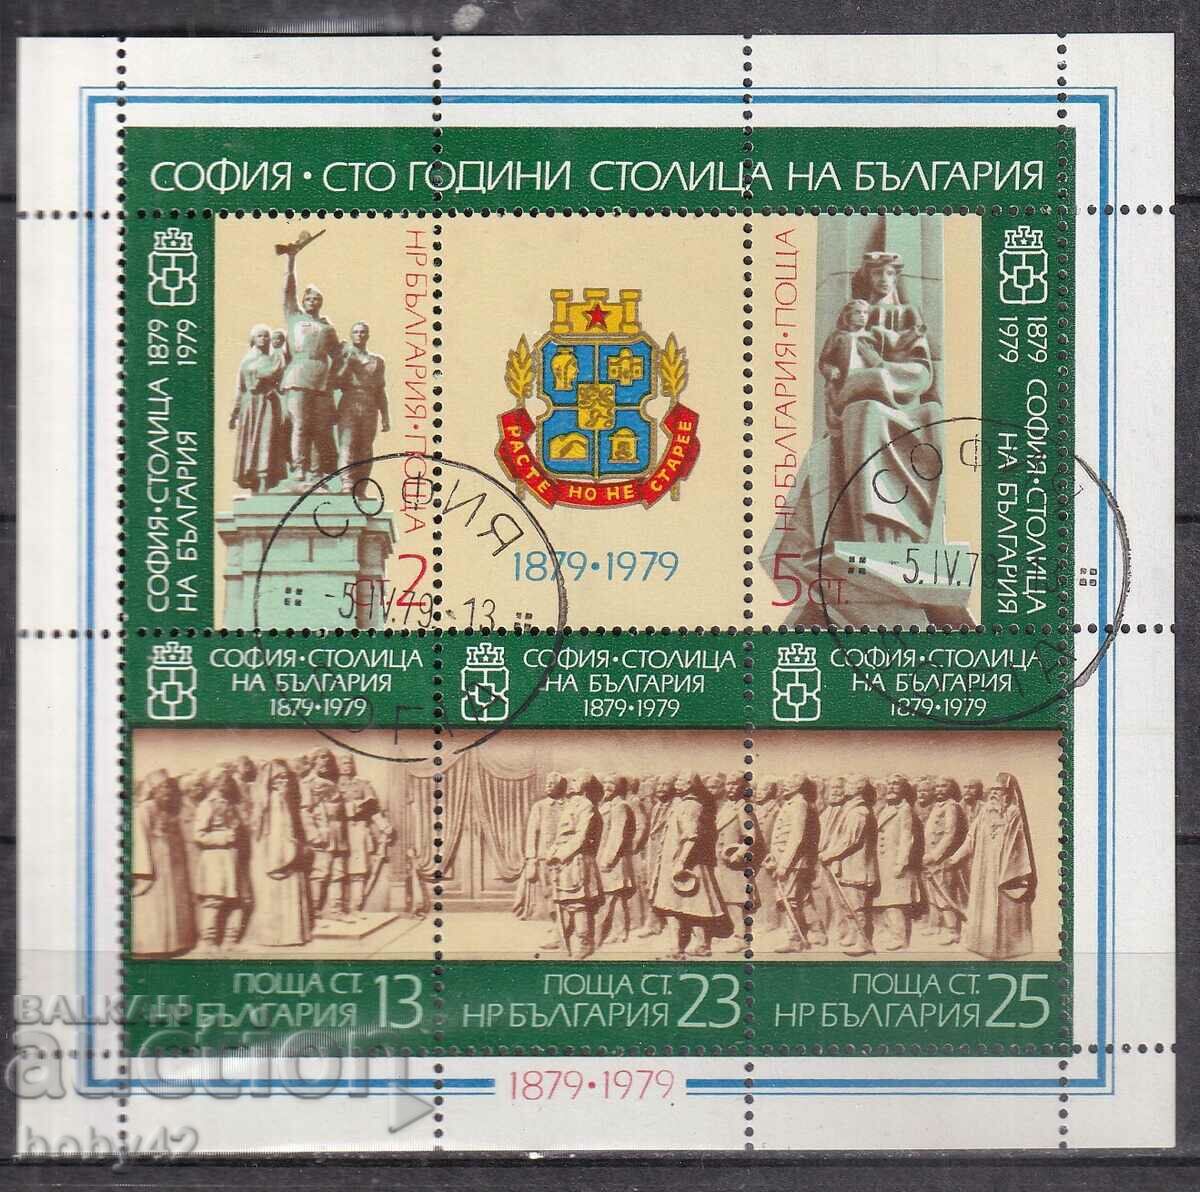 BK, 2821-2825 Sofia-100 years capital of Bulgaria machine glue